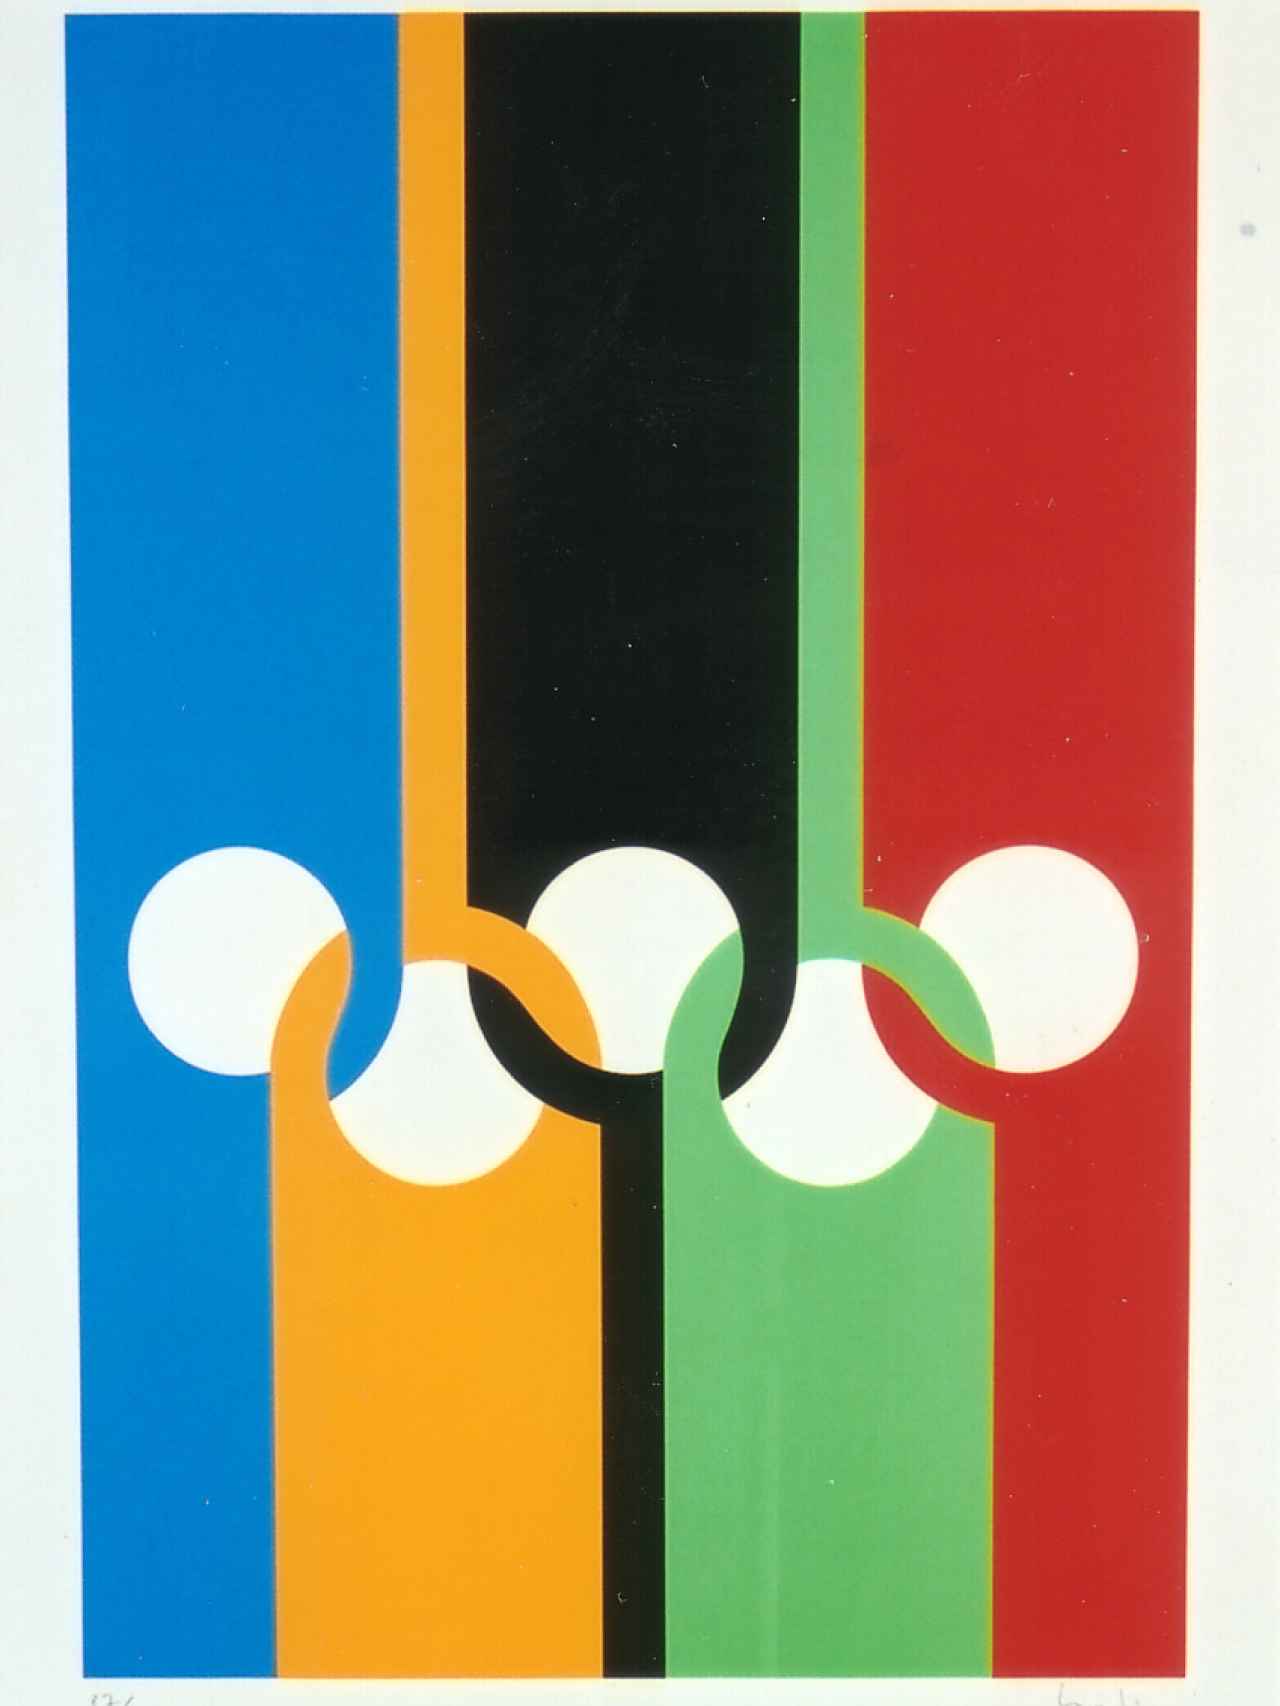 Los anillos olímpicos en versión de 1970.